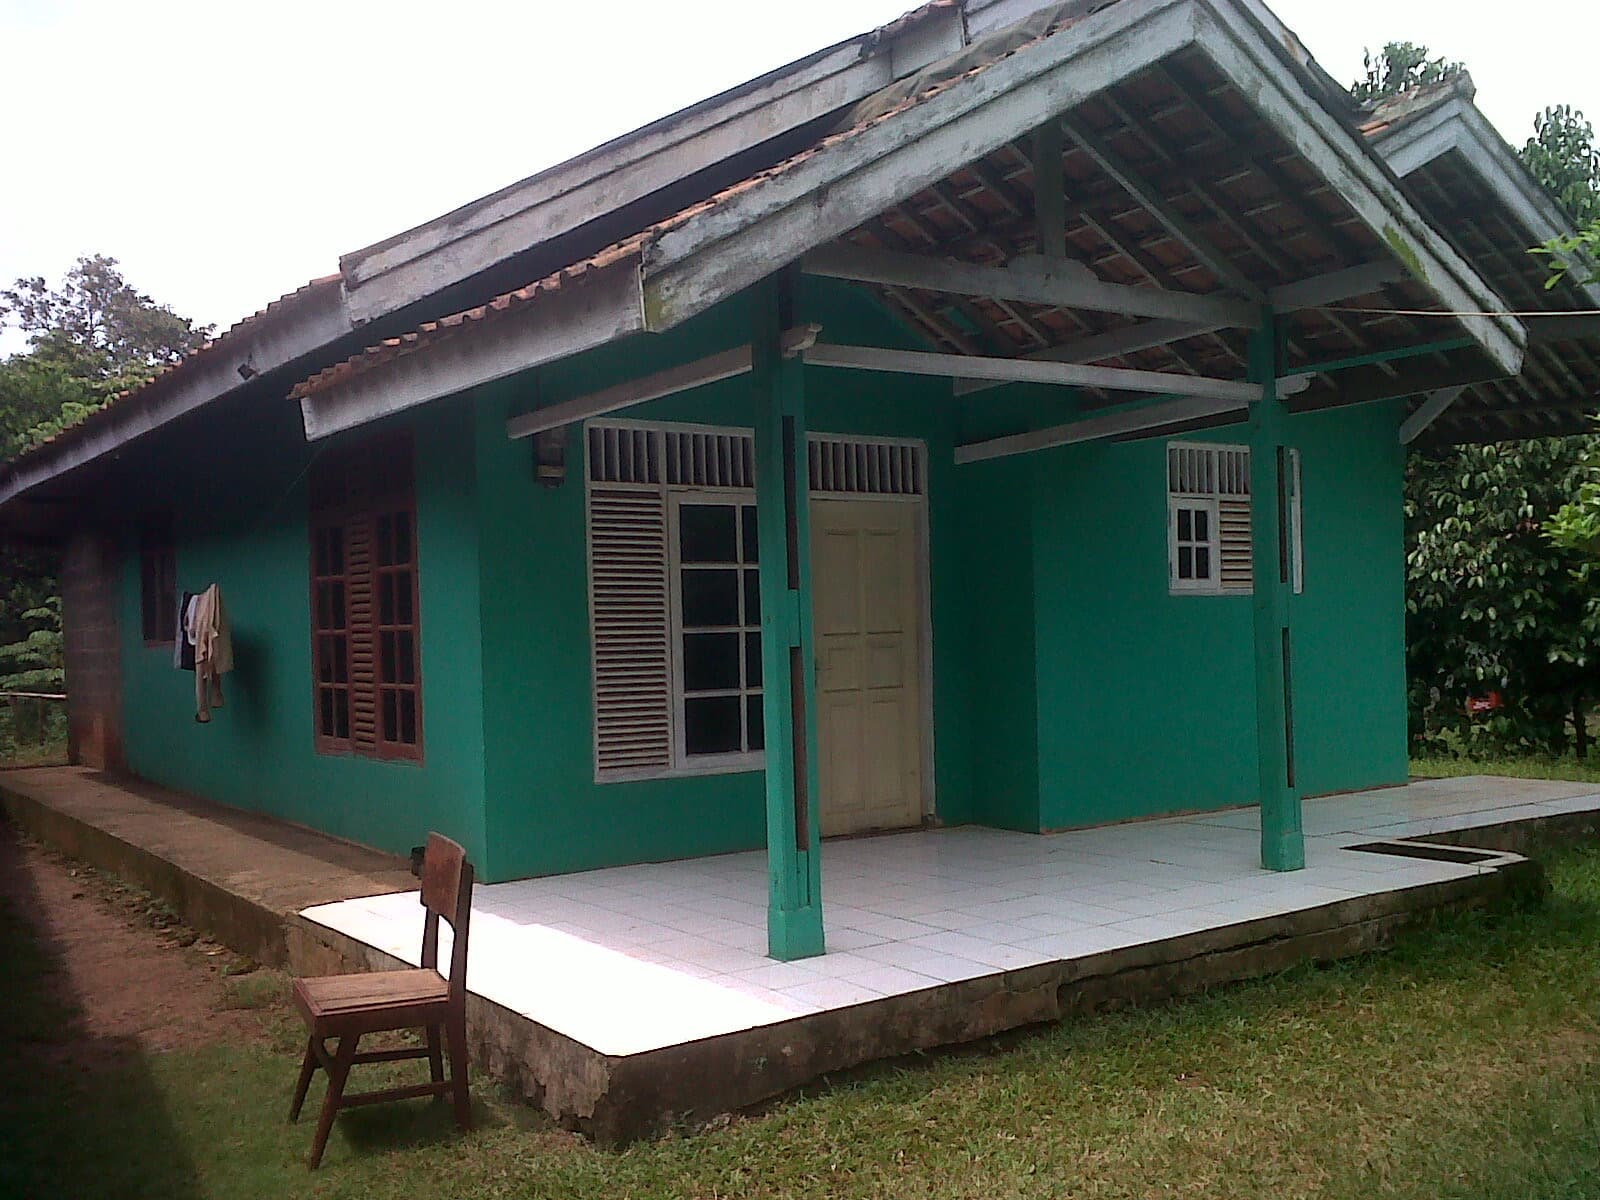 rumah desa simple dan nyaman - Thegorbalsla